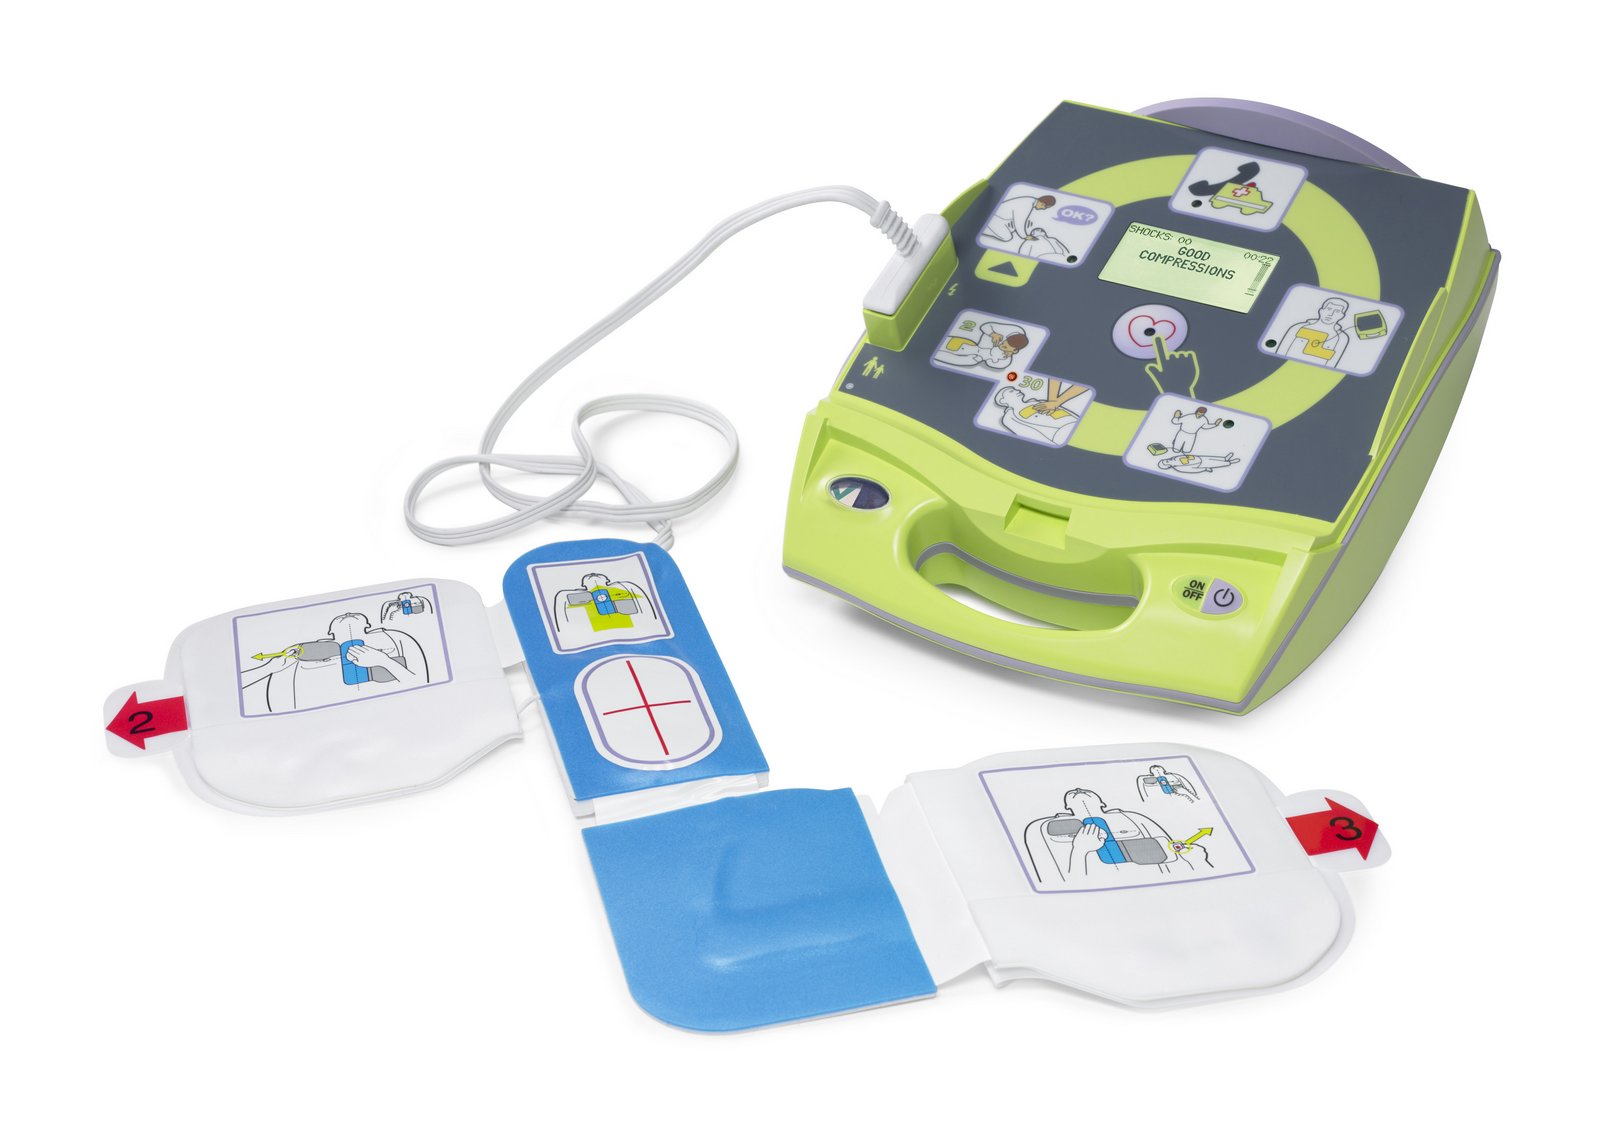 AED Plus® Defibrillator